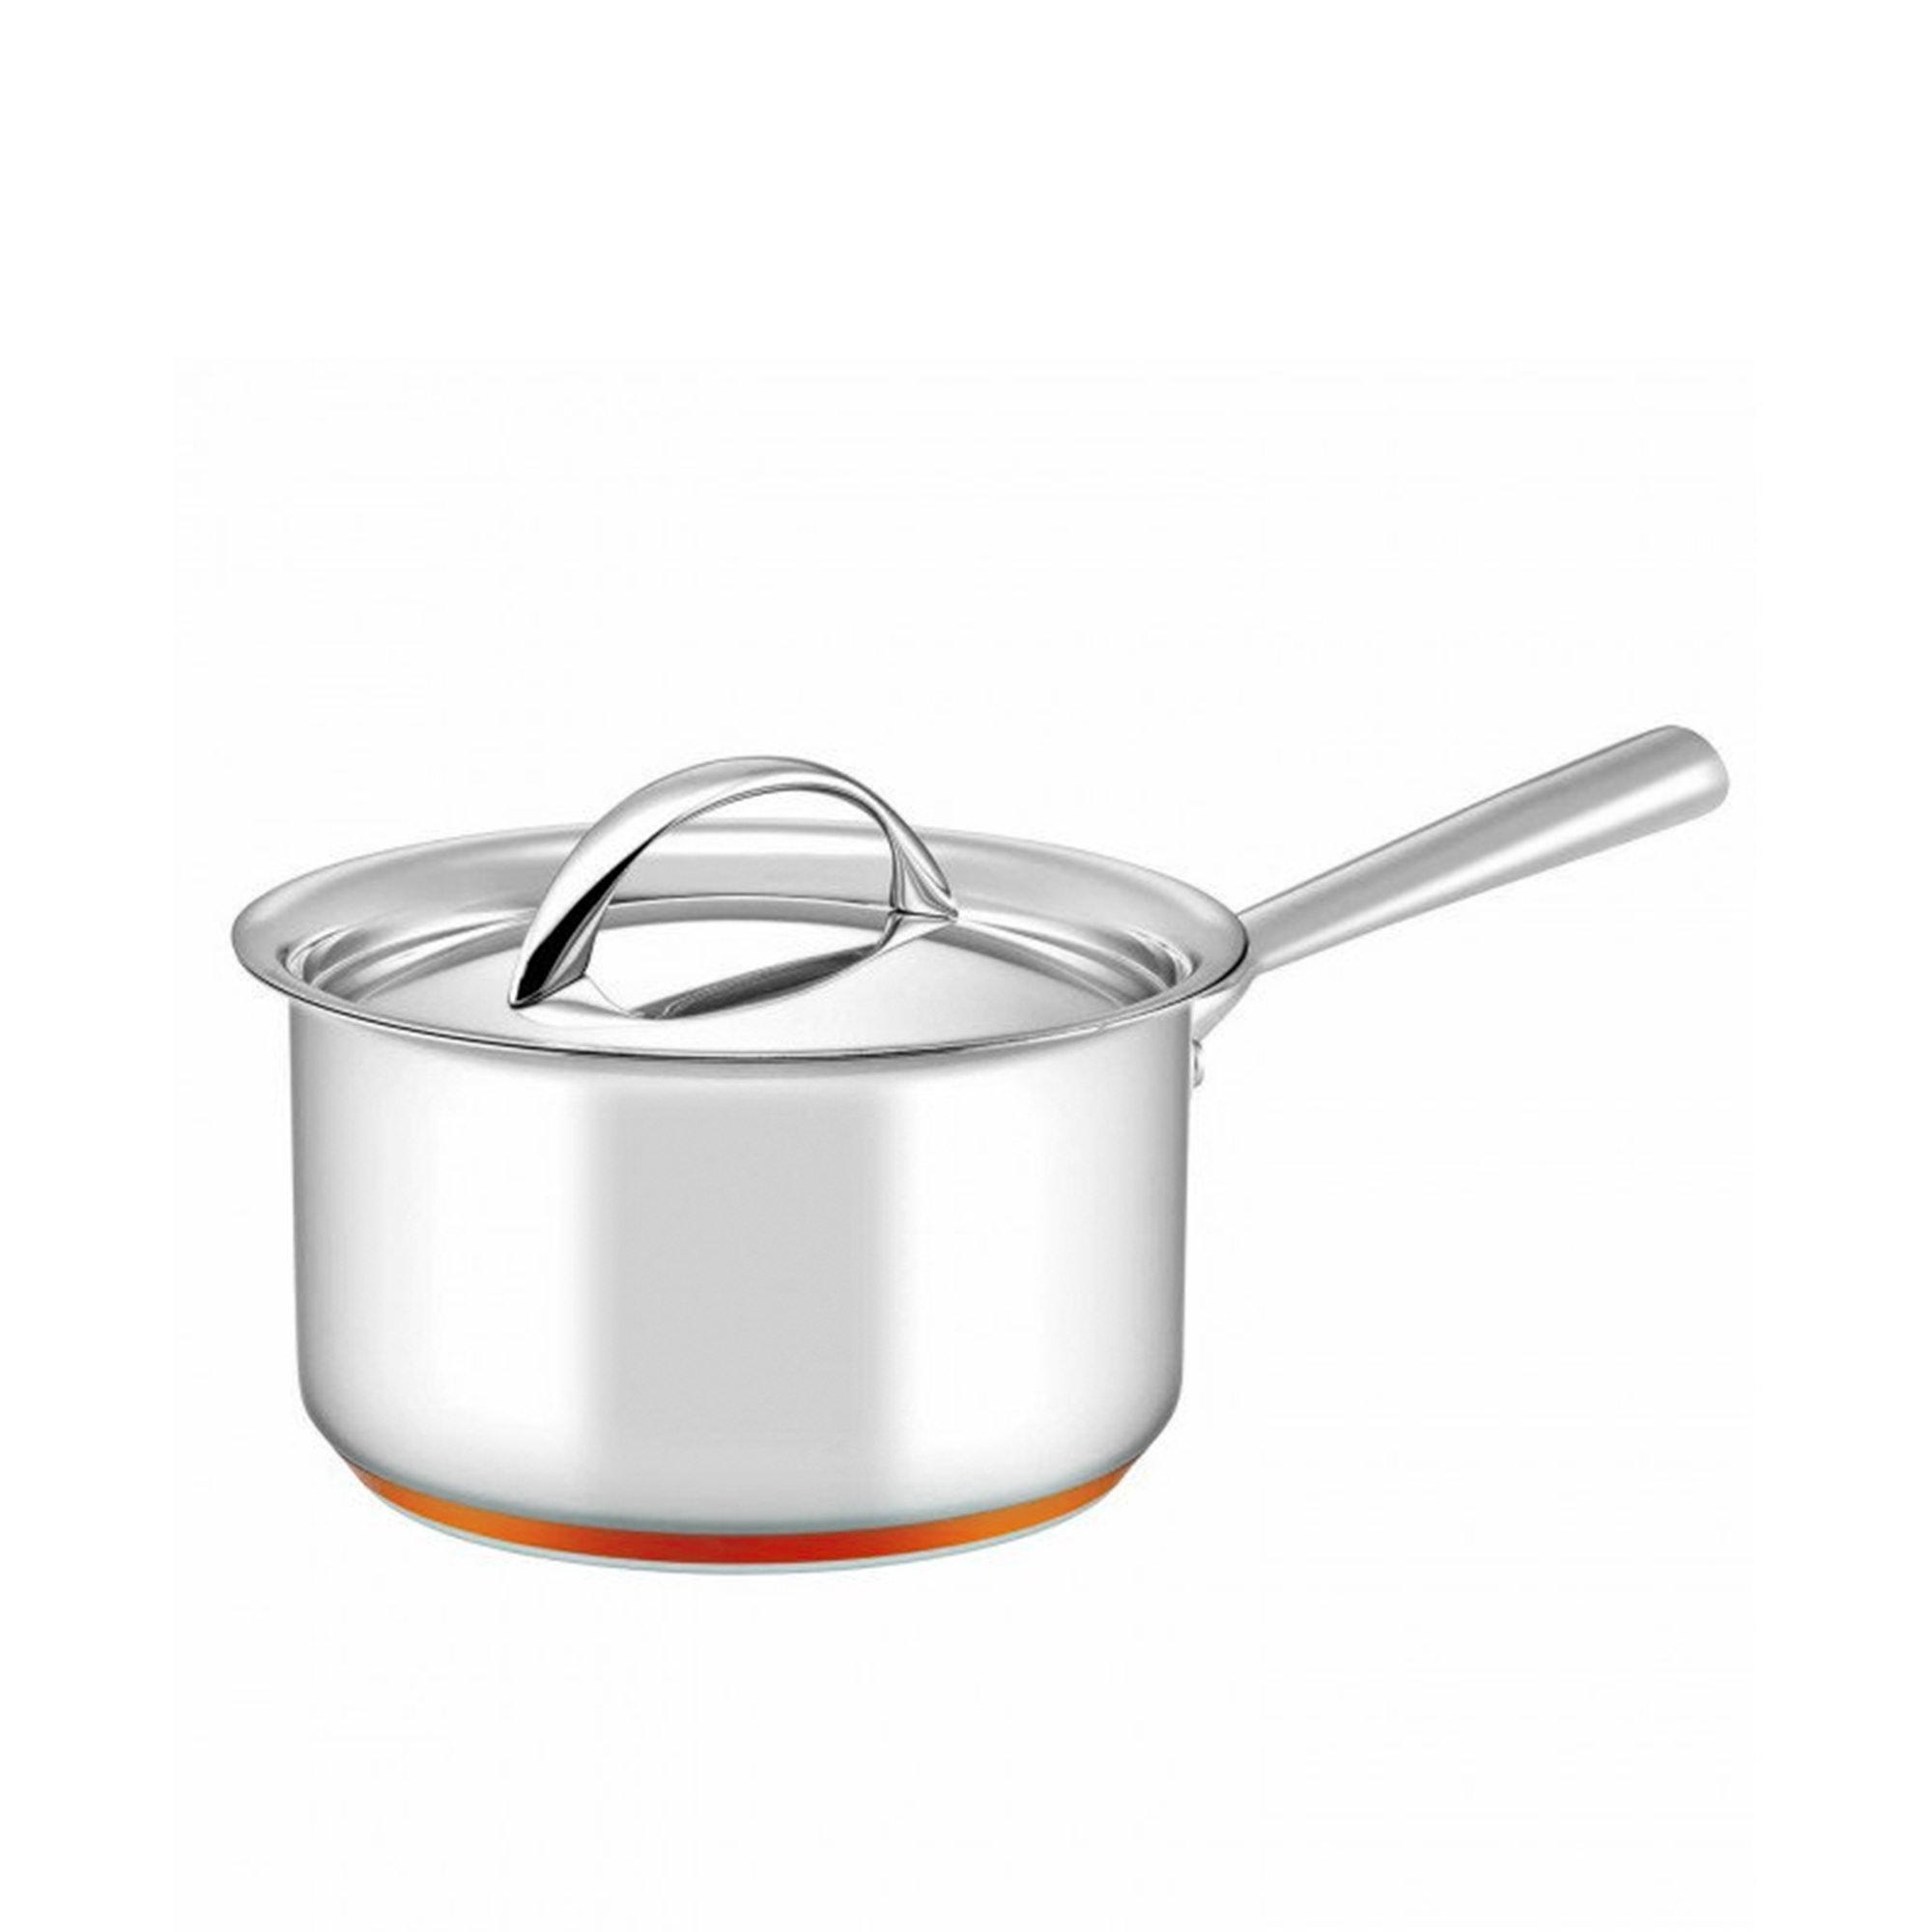 Essteele Per Vita 4pc Stainless Steel Cookware Set Image 5